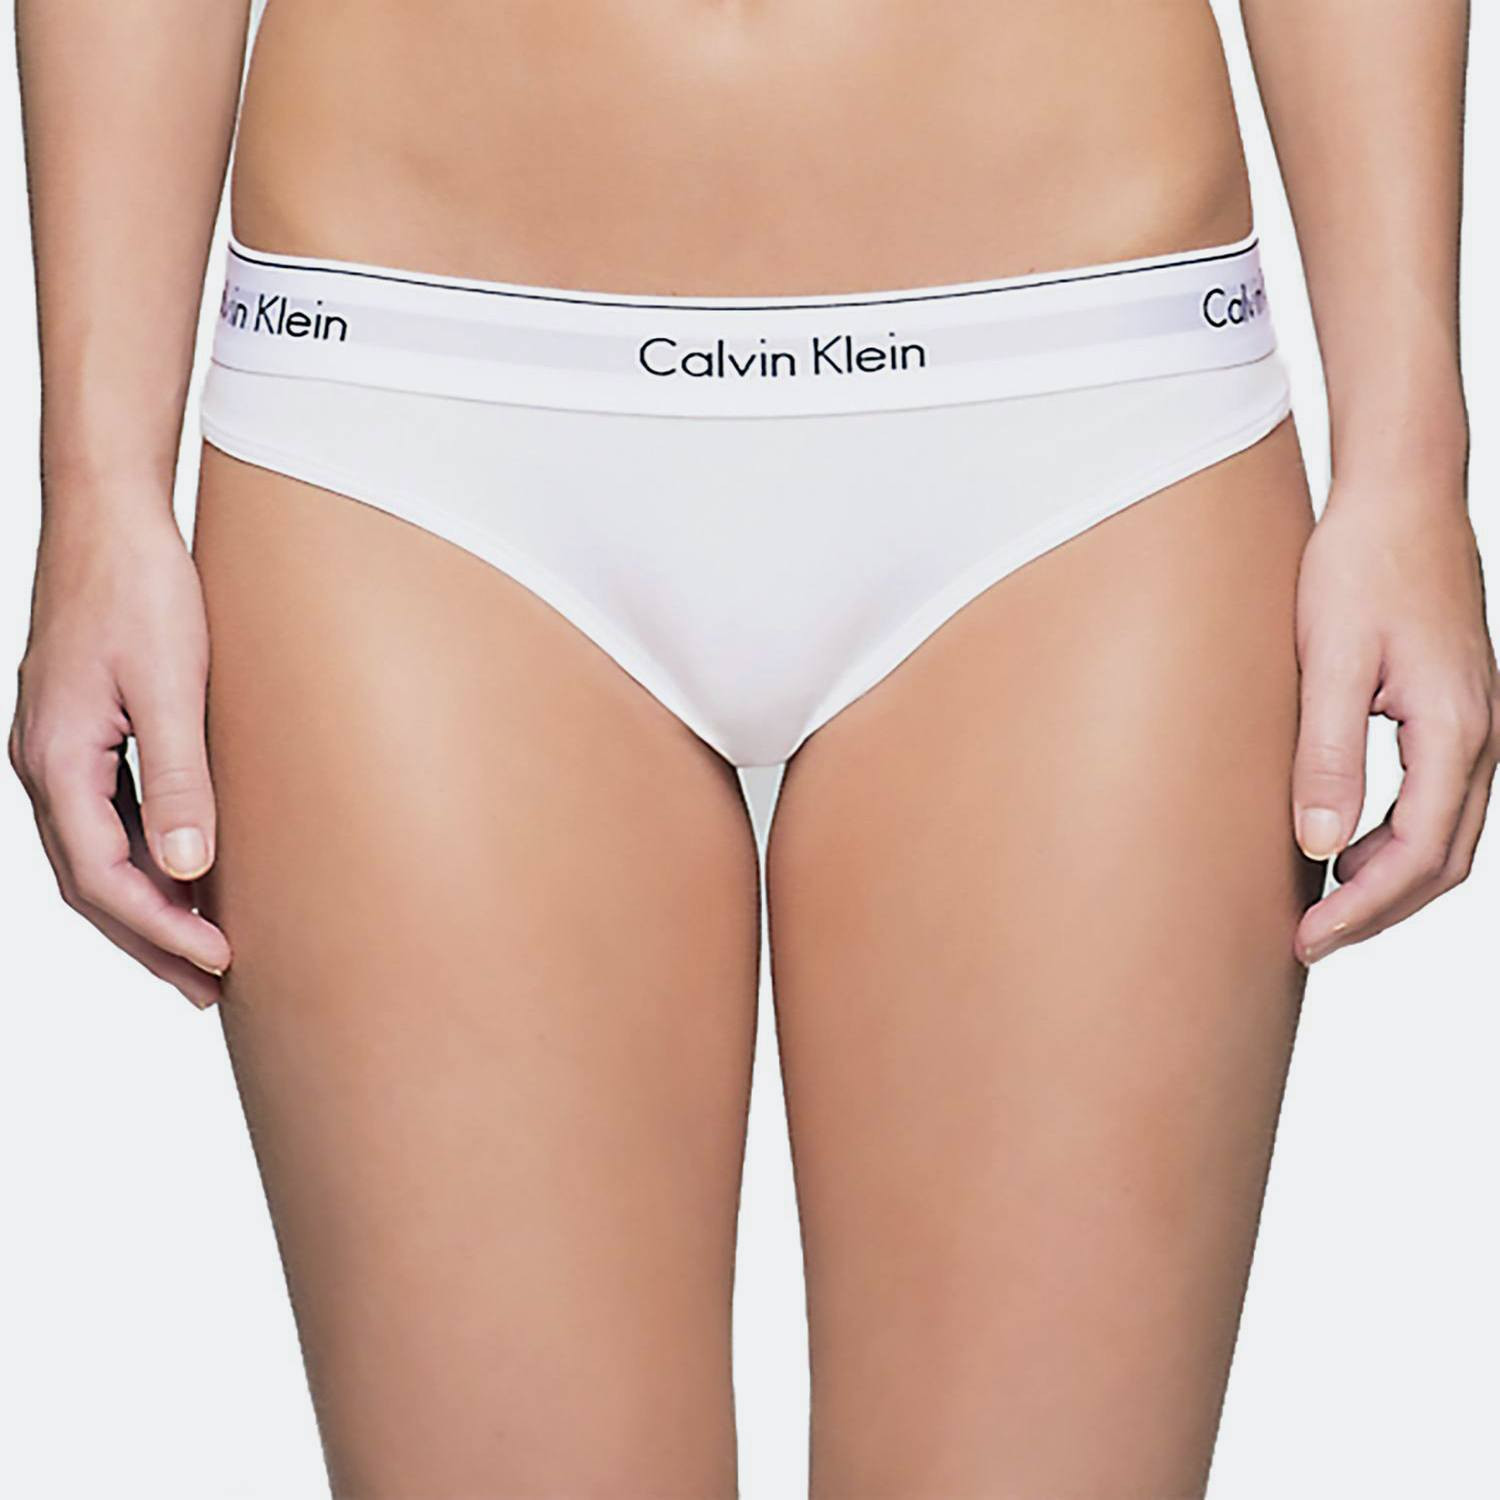 Calvin Klein Brief Γυναικείο Εσώρουχο (2085920015_1539)